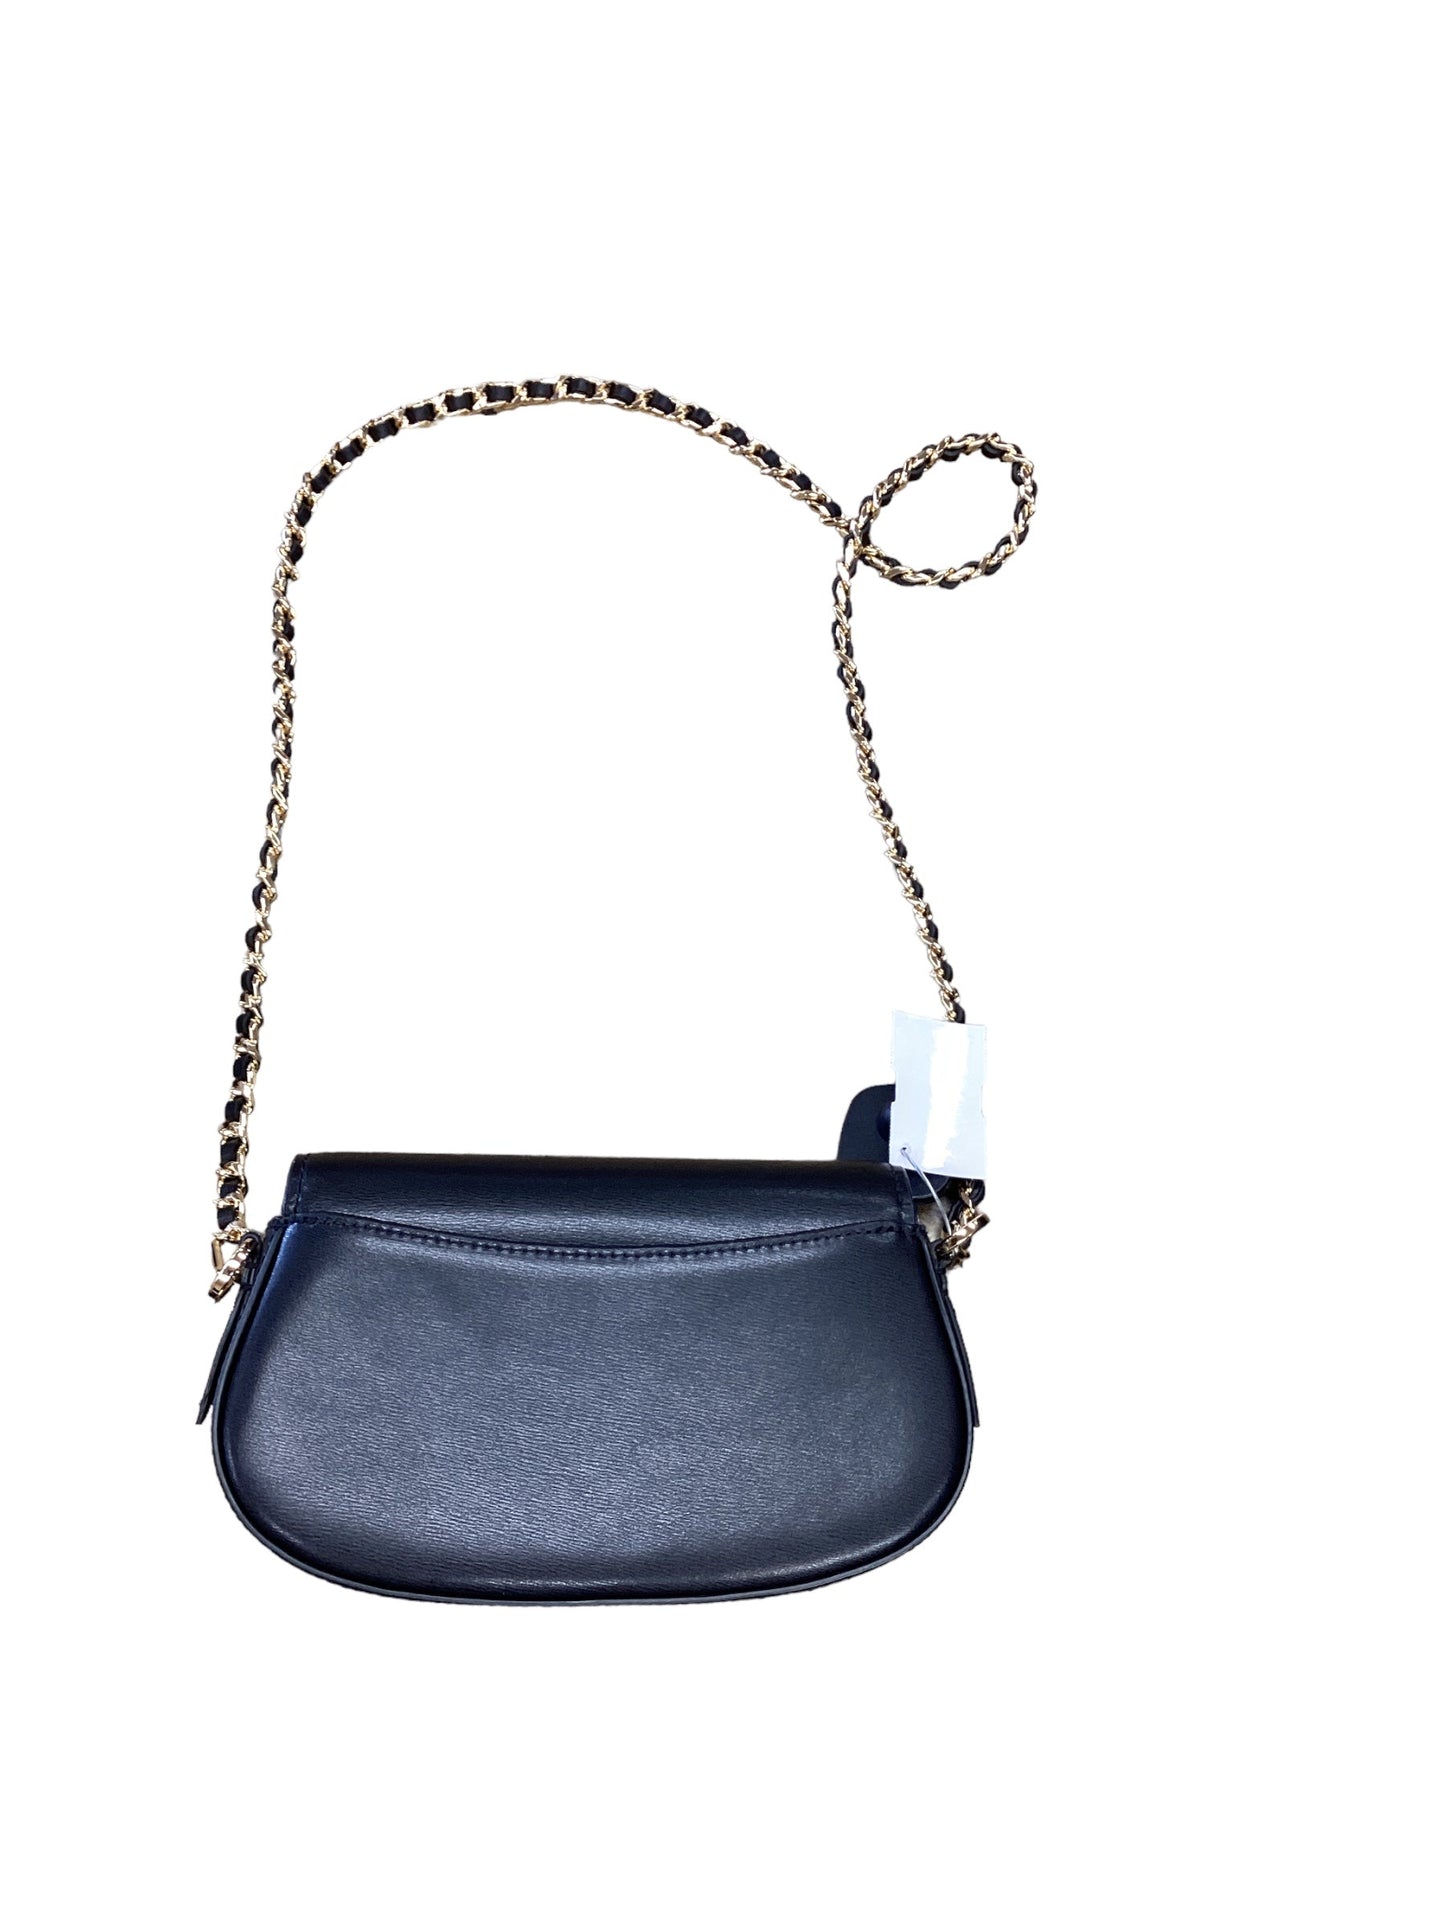 Handbag By Michael Kors  Size: Small